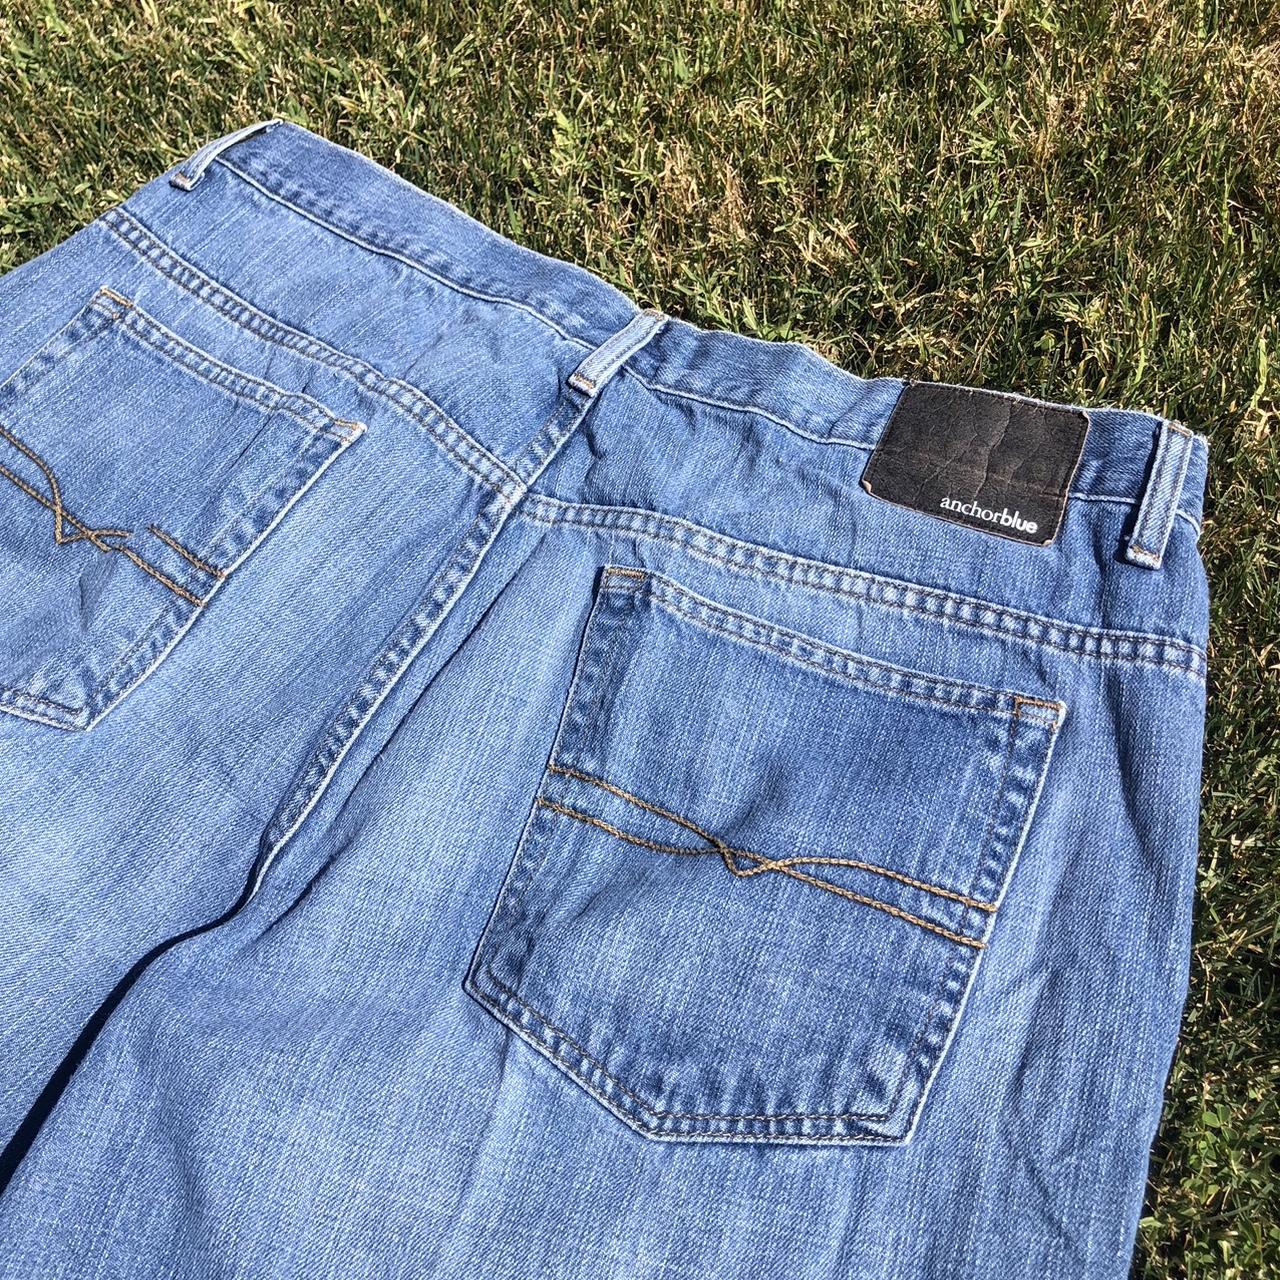 y2k baggy anchor blue jeans original fit 38x30 - Depop